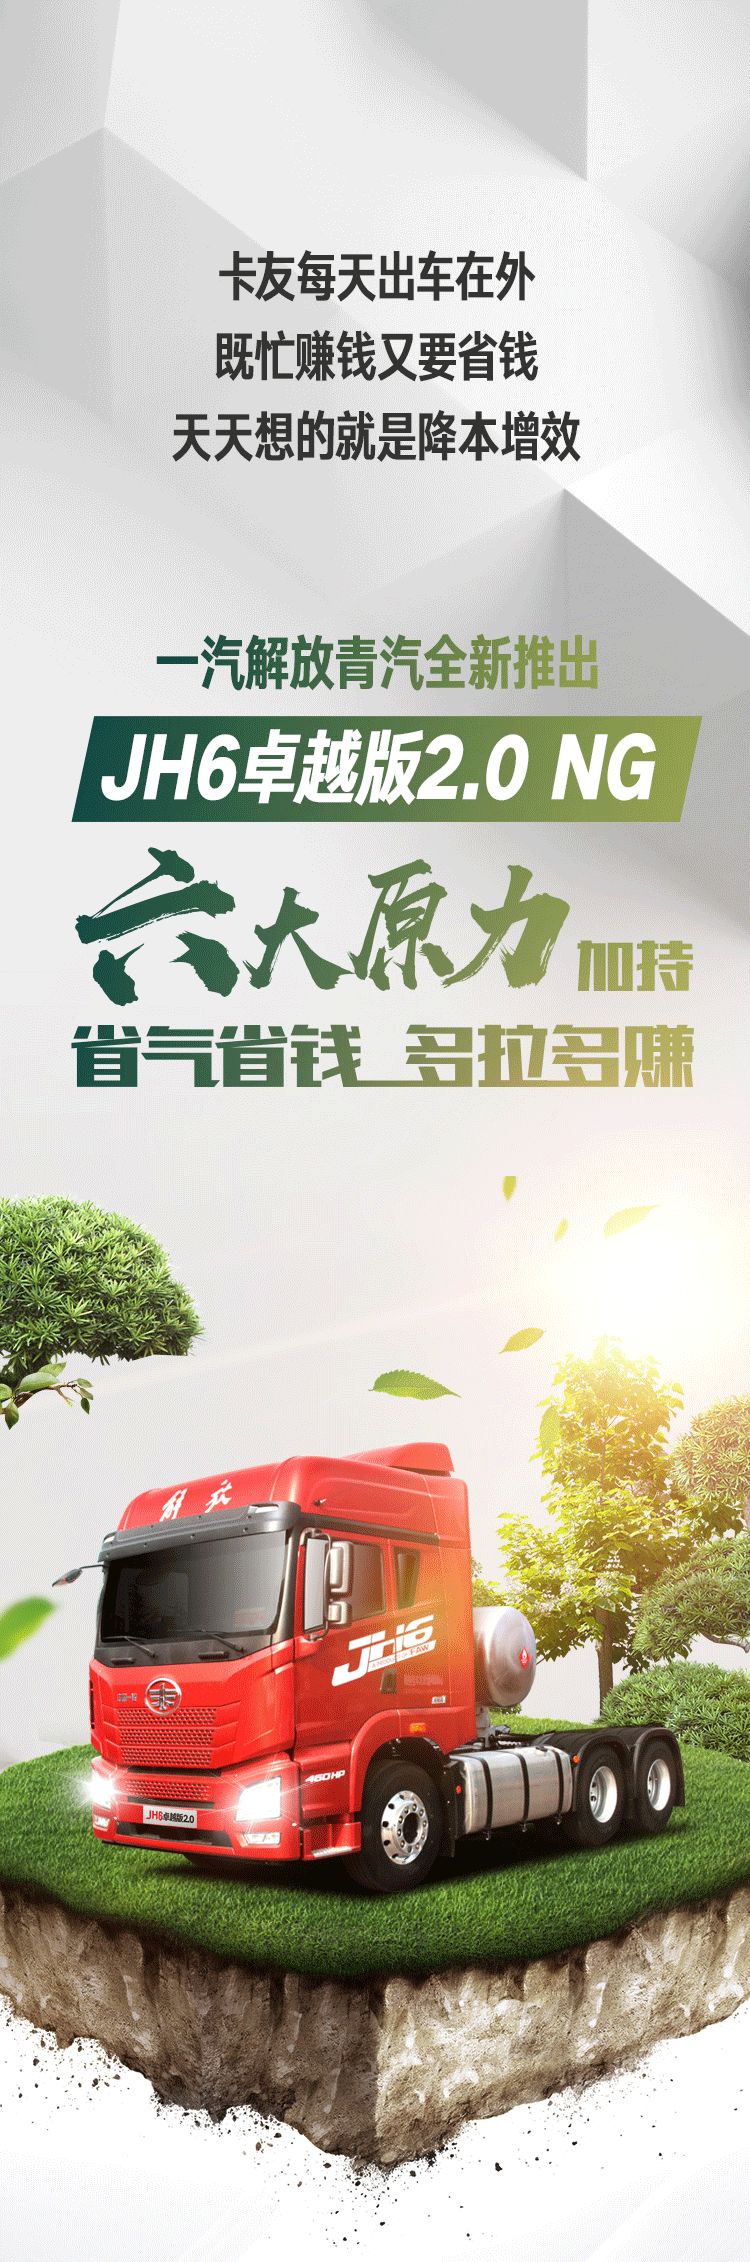 JH6卓越版2.0 NG：动力强气耗低，能省会赚不服就干